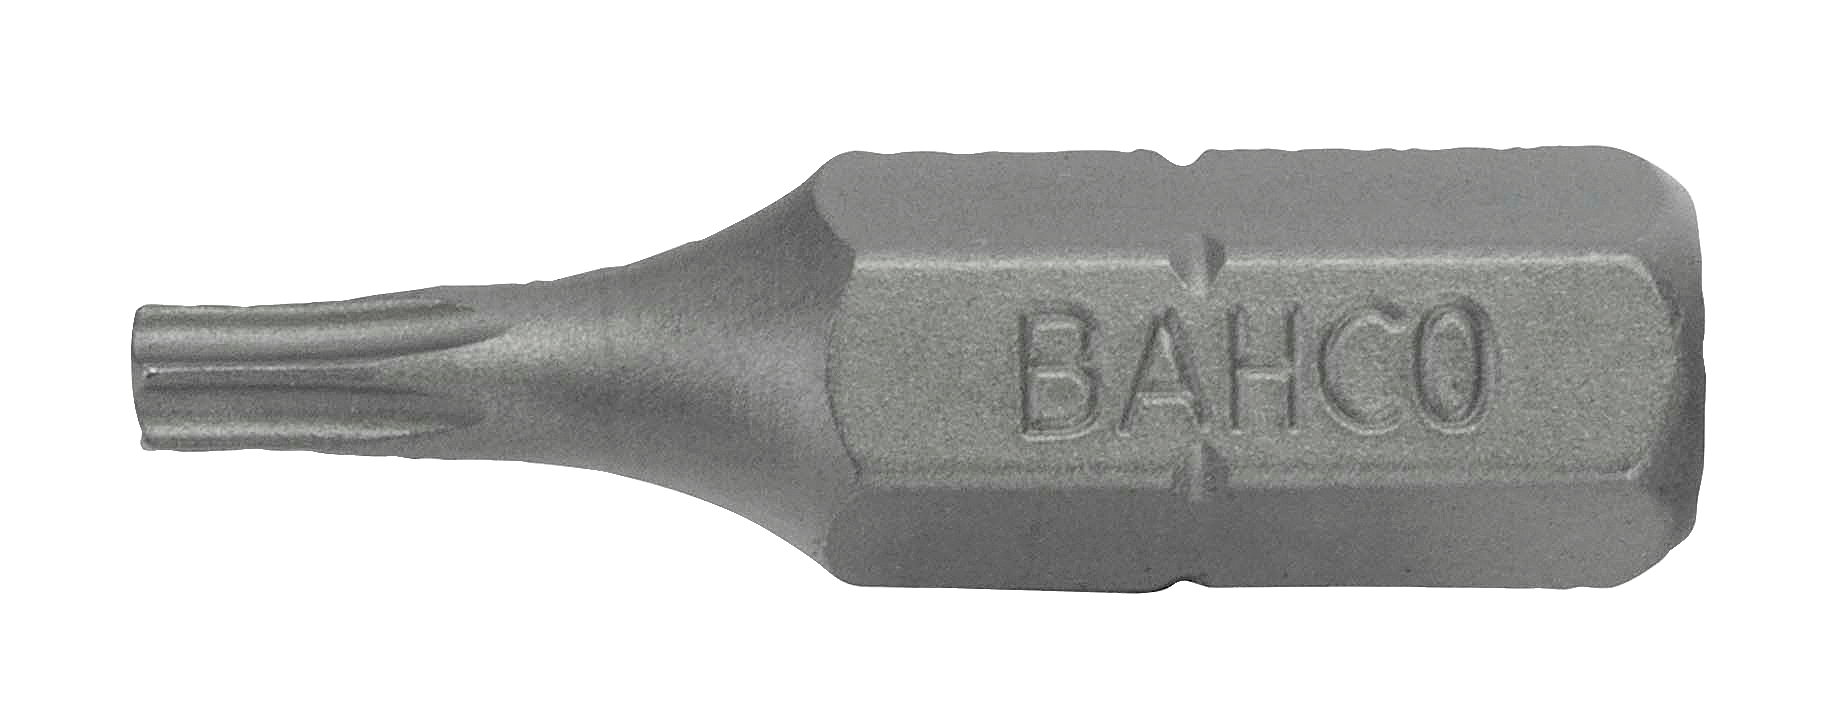 картинка Стандартные биты для отверток Torx®, 25 мм BAHCO 59S/T50 от магазина "Элит-инструмент"